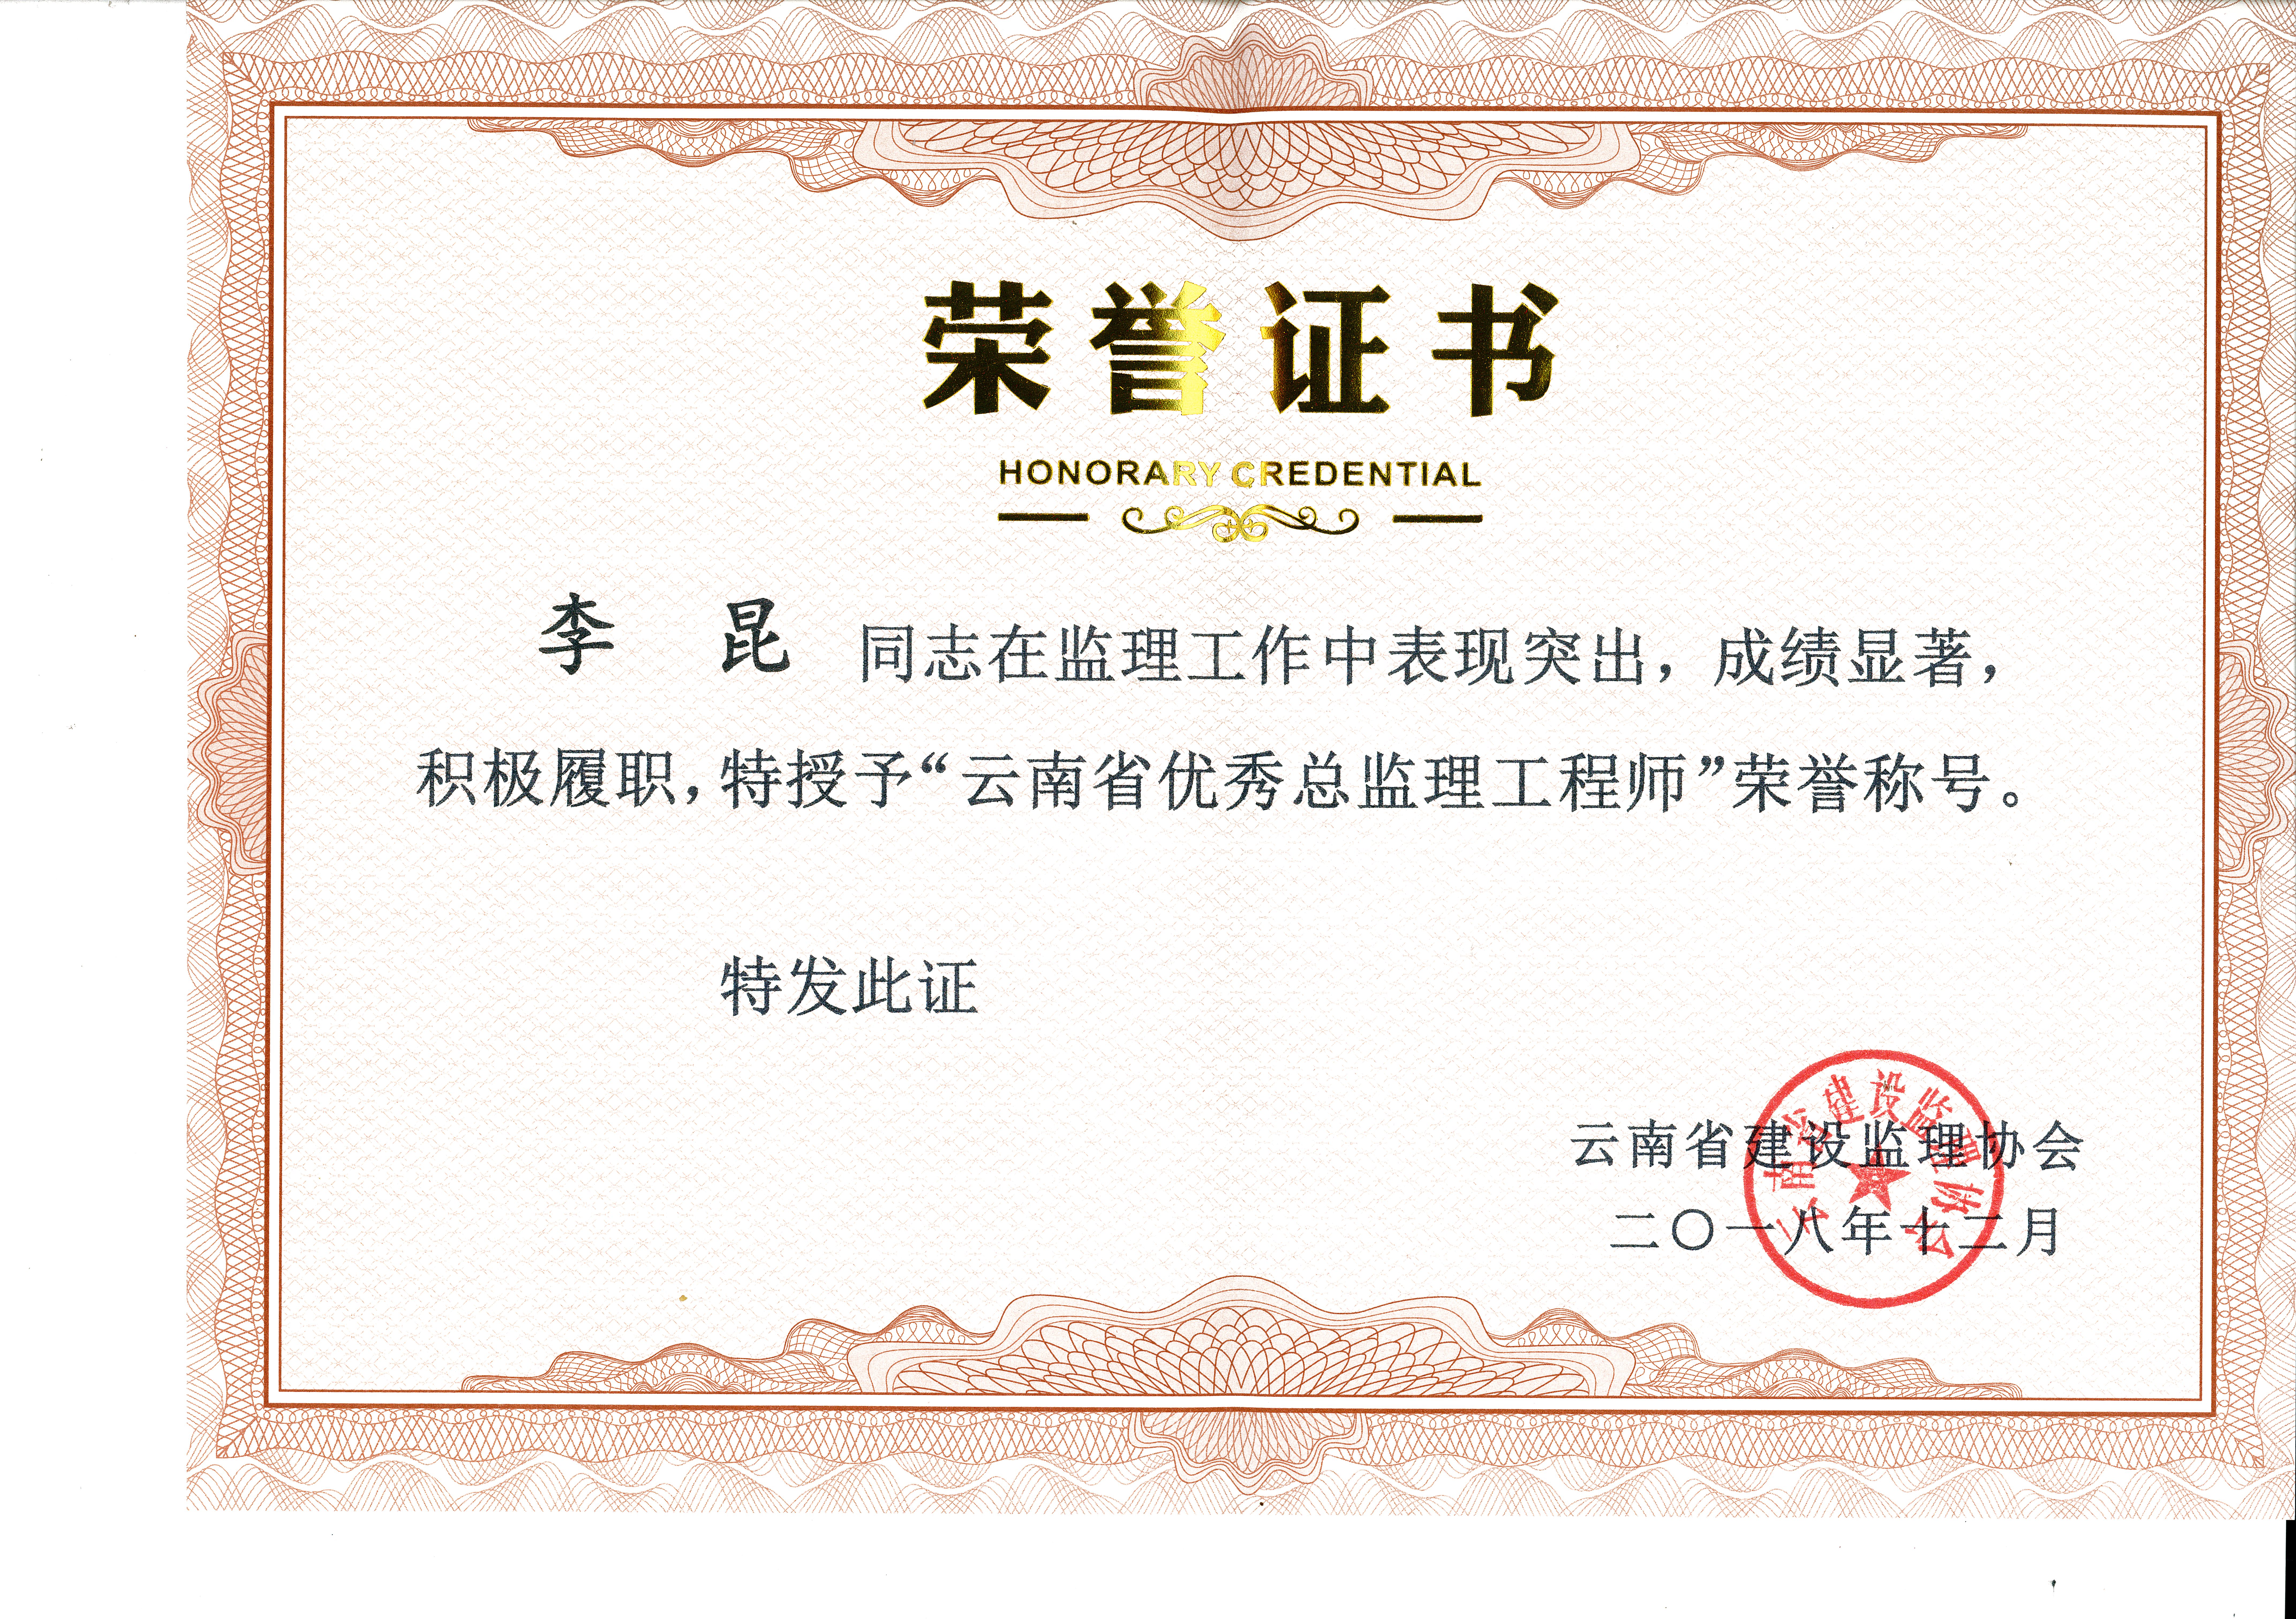 恭贺公司李昆同志荣获云南省优秀总监理工程师荣誉称号